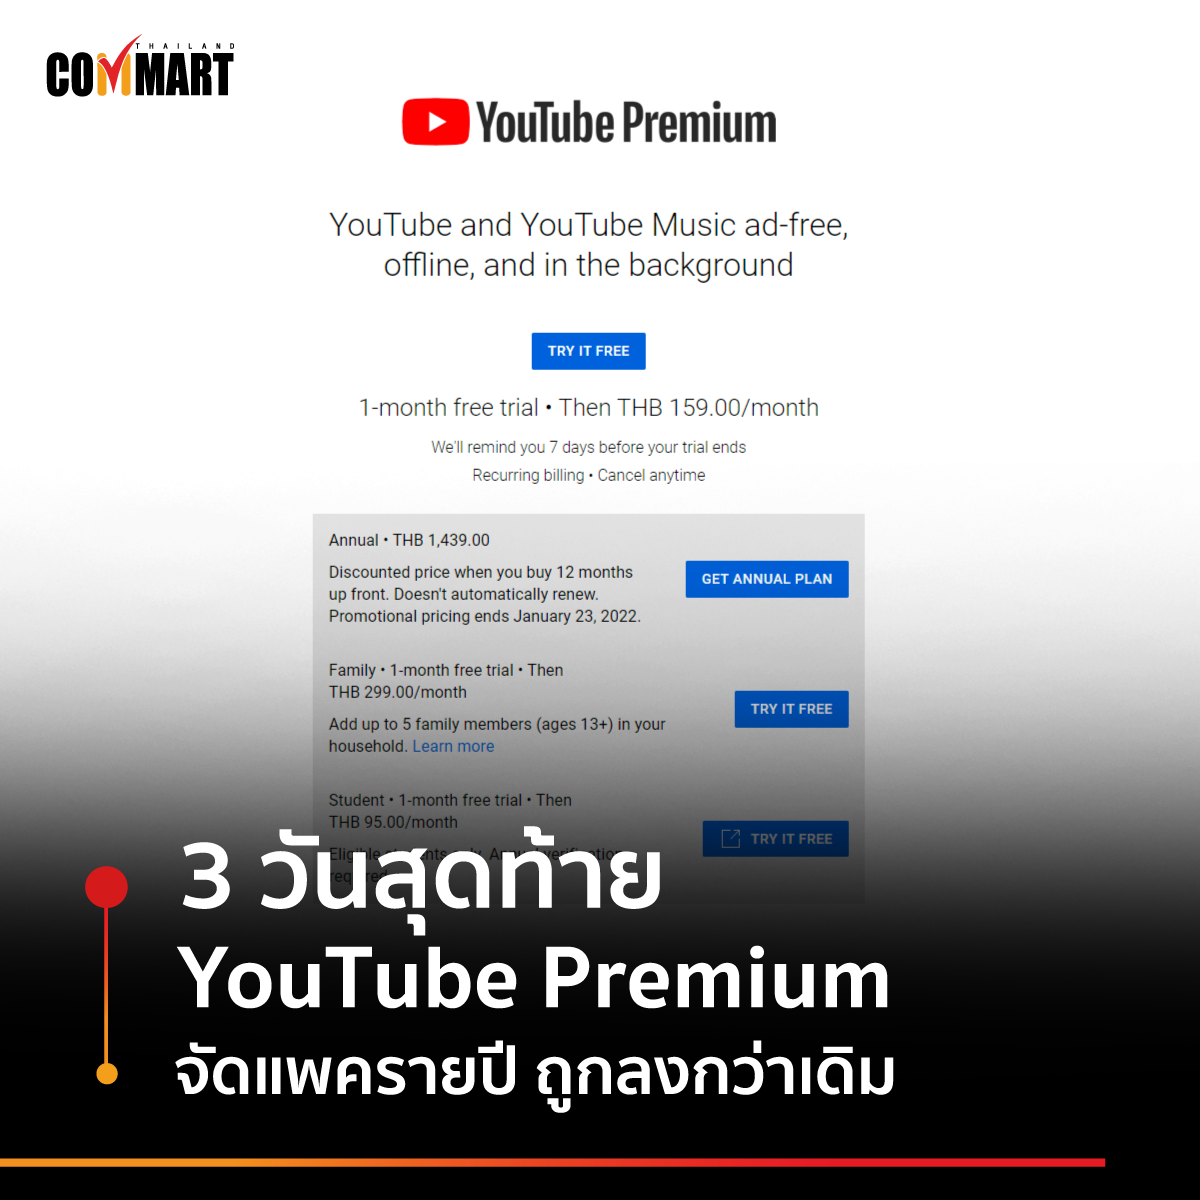 3 วันสุดท้าย YouTube Premium จัดแพครายปี ถูกลงกว่าเดิม